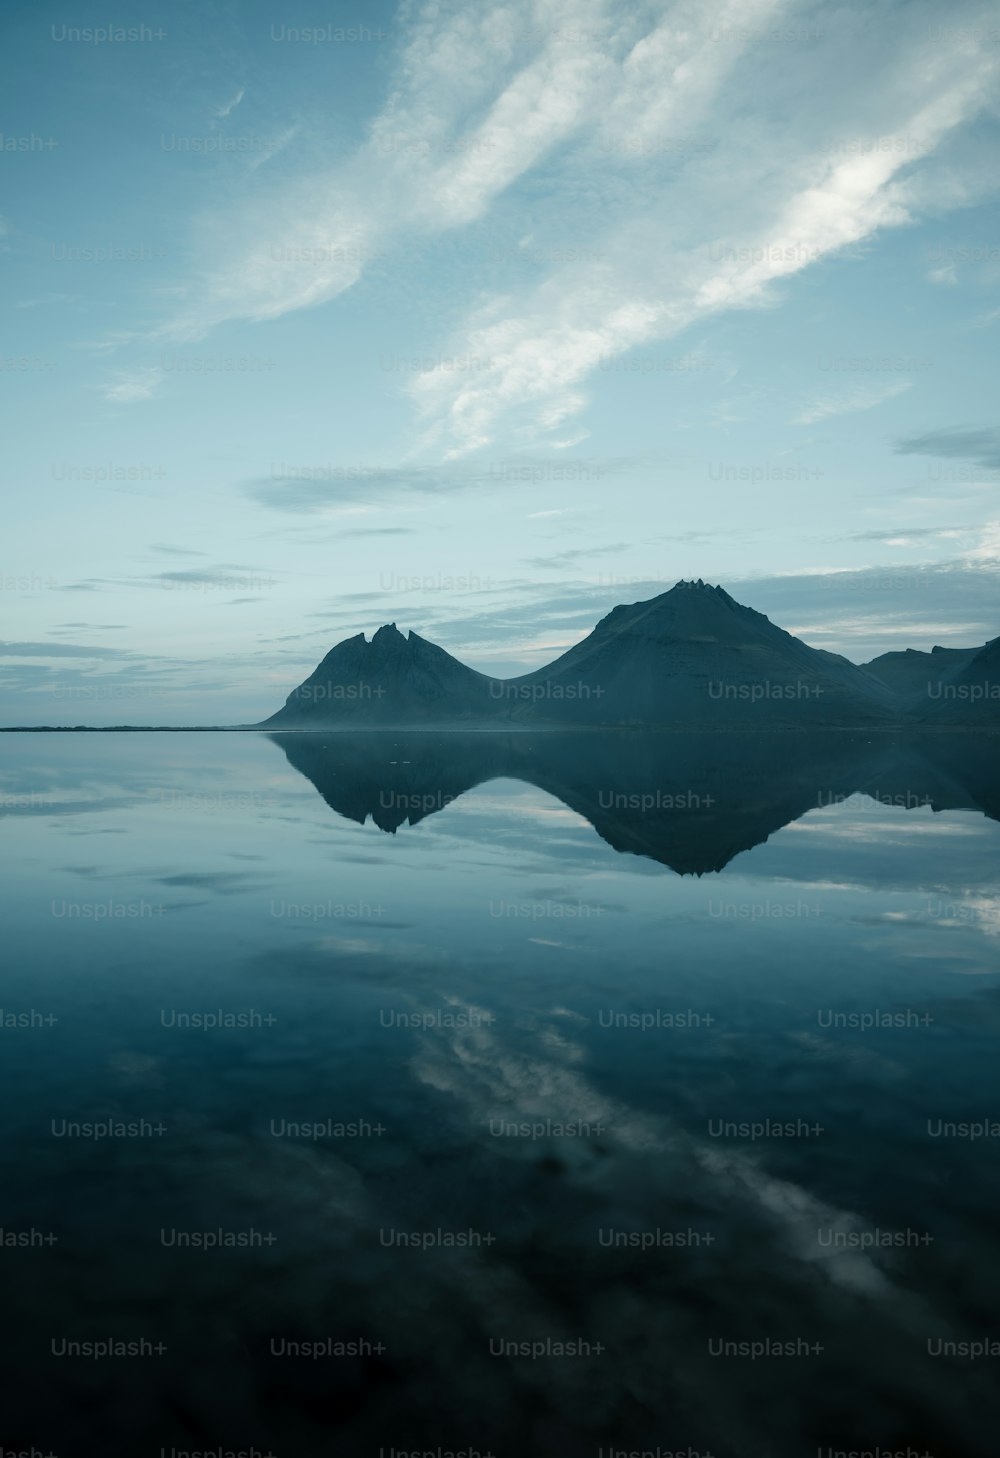 Un grande specchio d'acqua con le montagne sullo sfondo